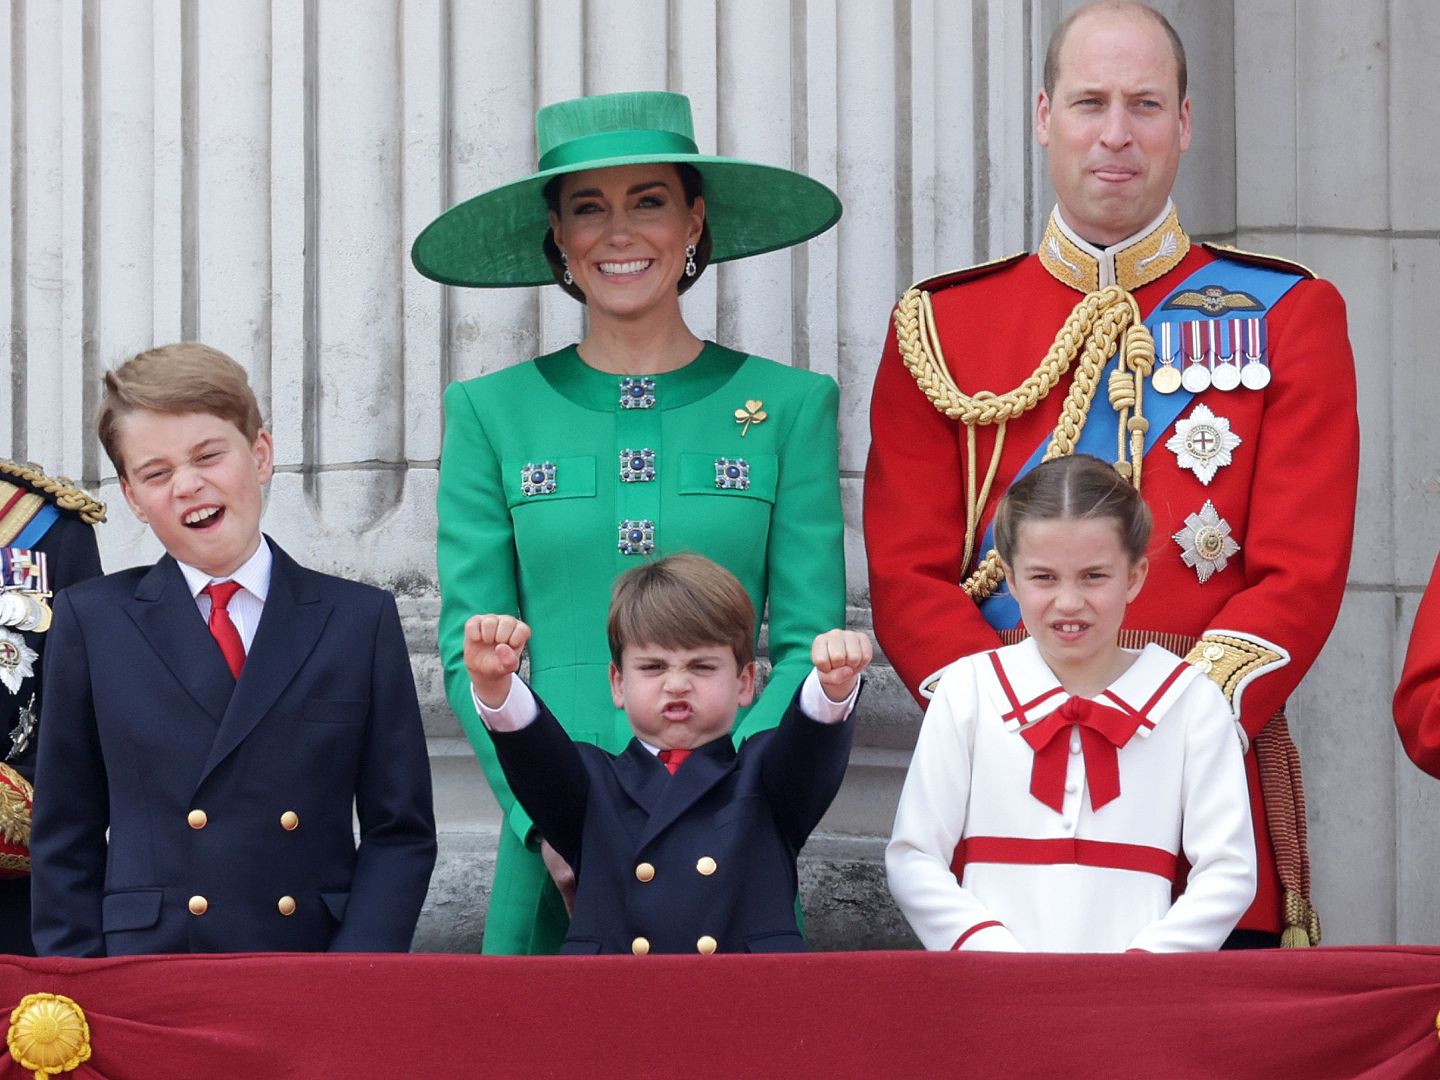 Thân vương William và Vương phi Kate đối mặt với vấn đề nan giải mới- Ảnh 1.